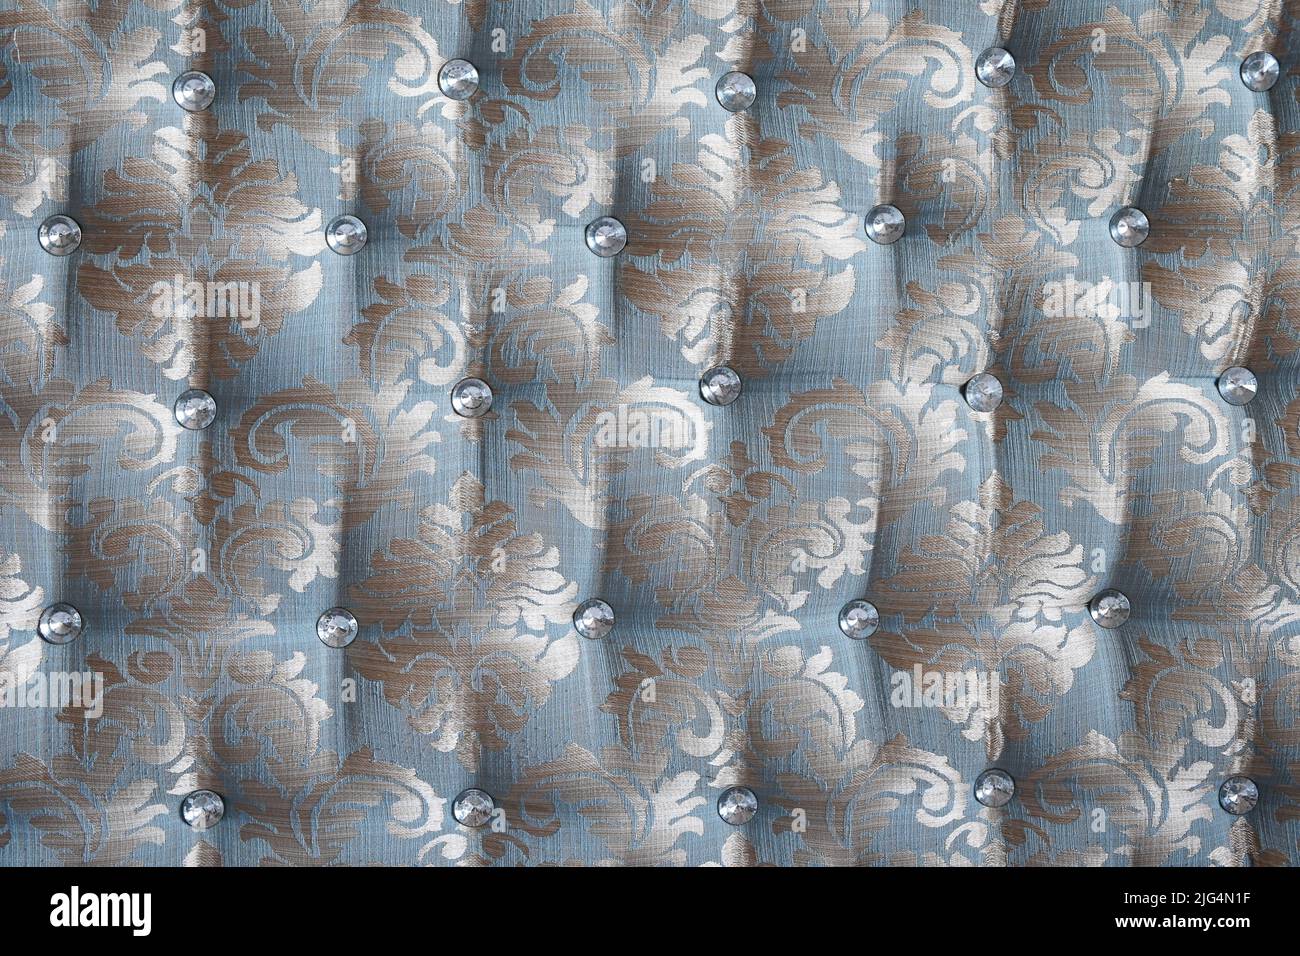 Vista frontal de tapicería de muebles antiguos con bordados y textura de botones de cristal Foto de stock